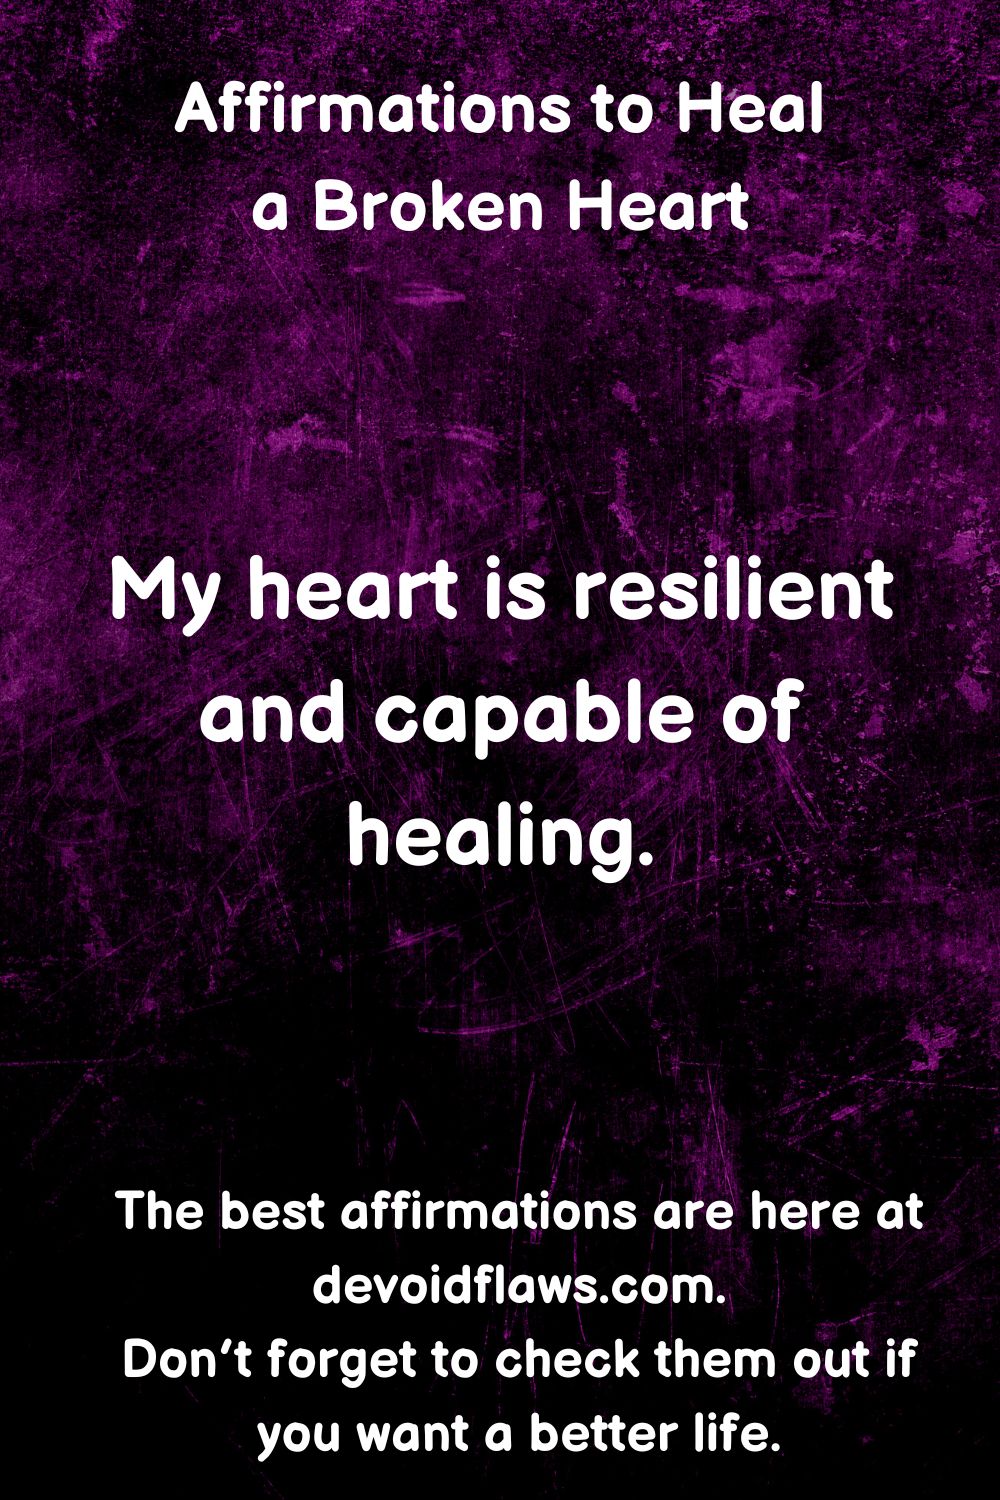 123 Affirmations to Heal a Broken Heart